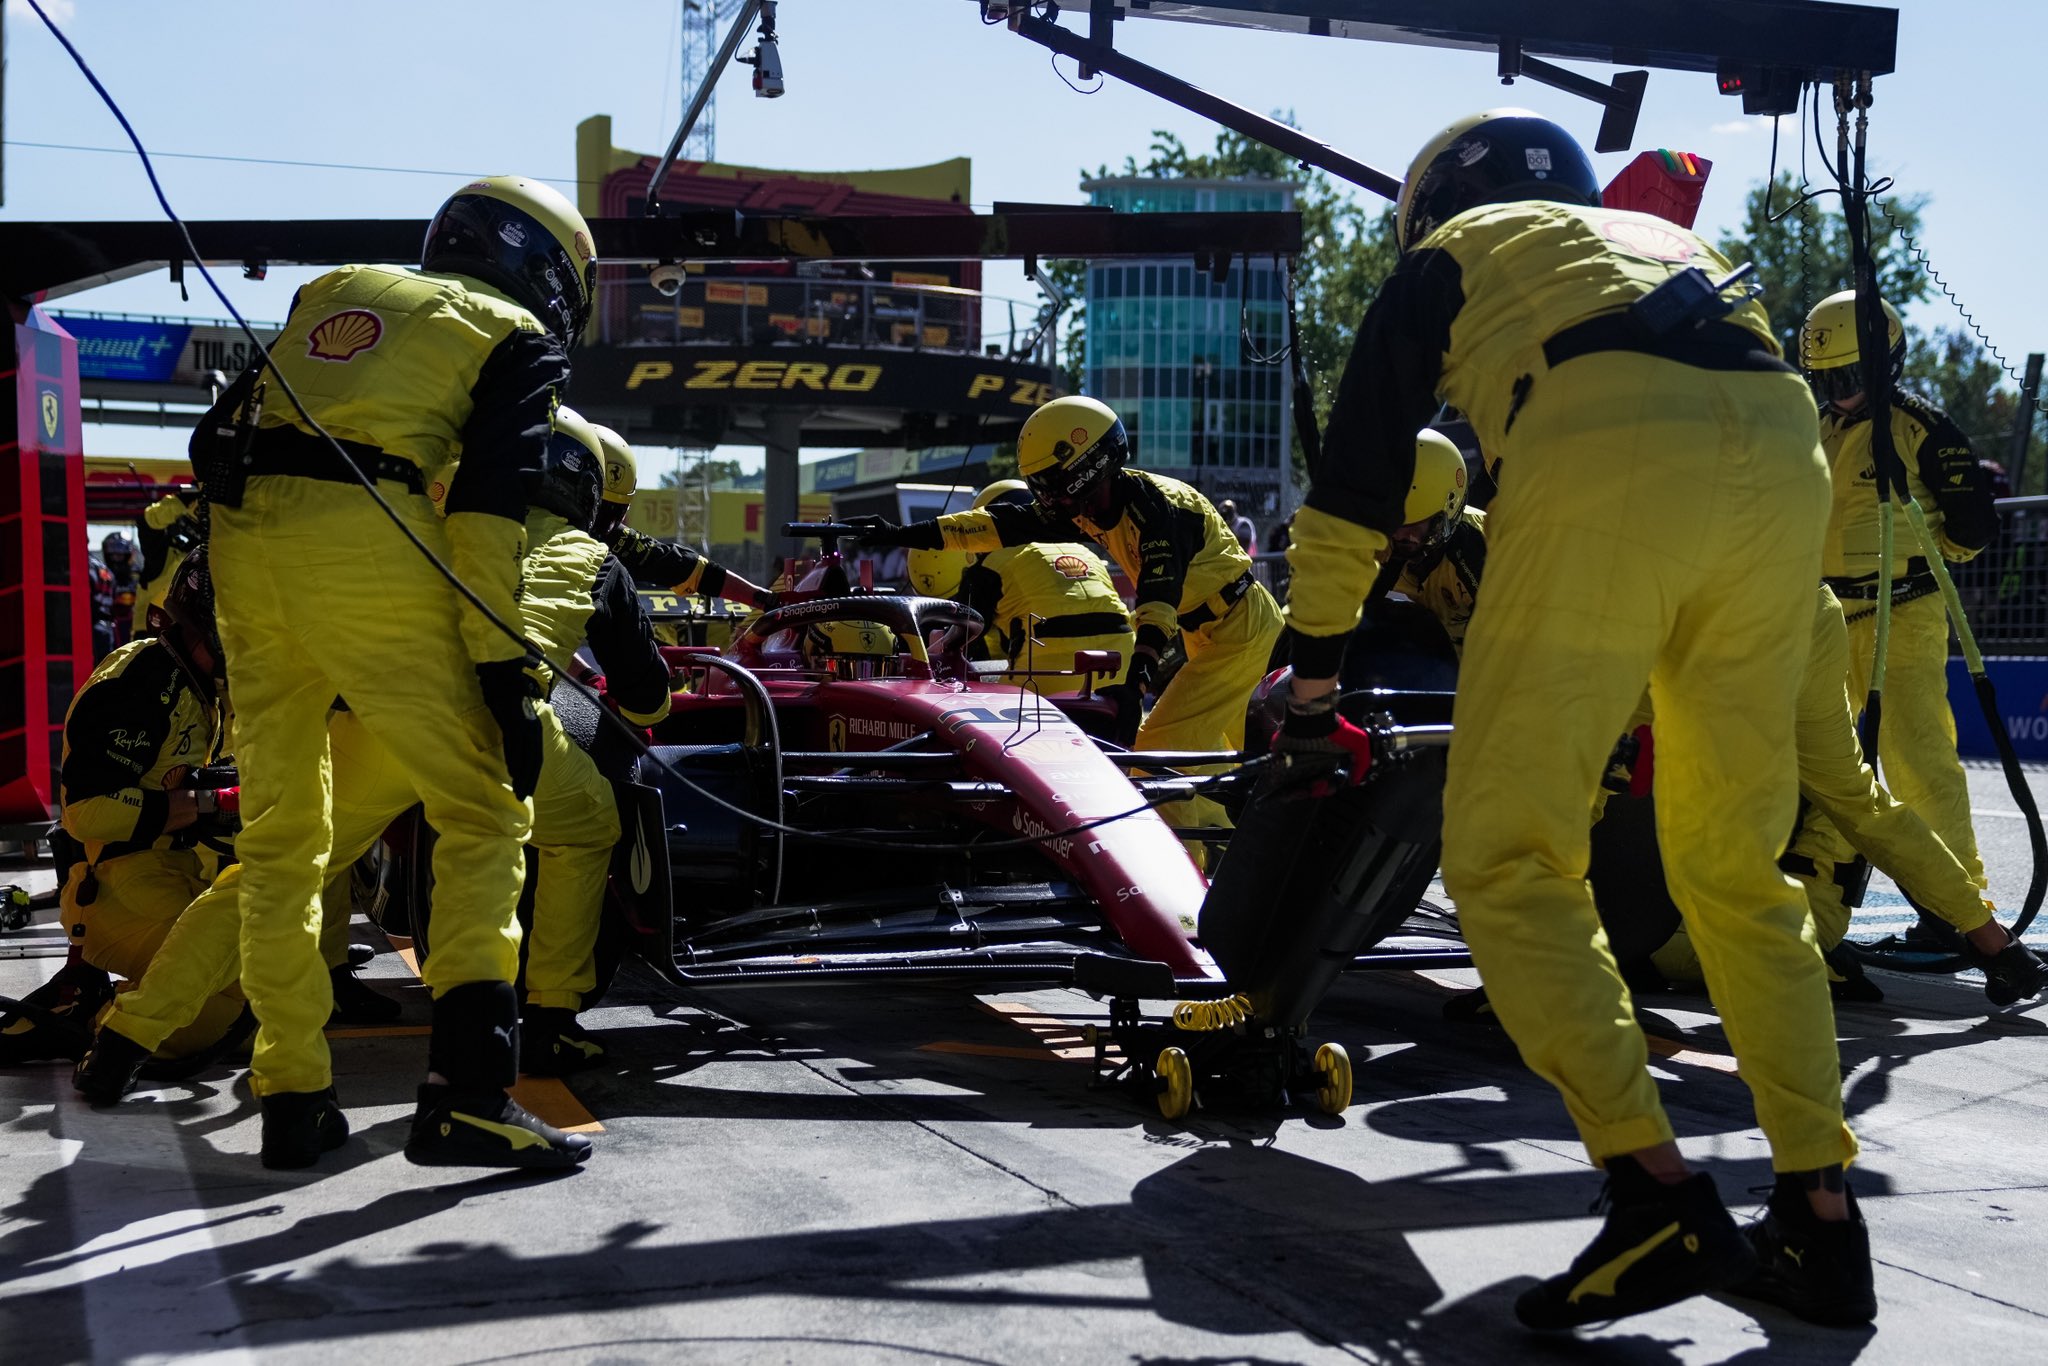 Le premier arrêt aux stands de Leclerc pendant le Grand Prix d'Italie 2022